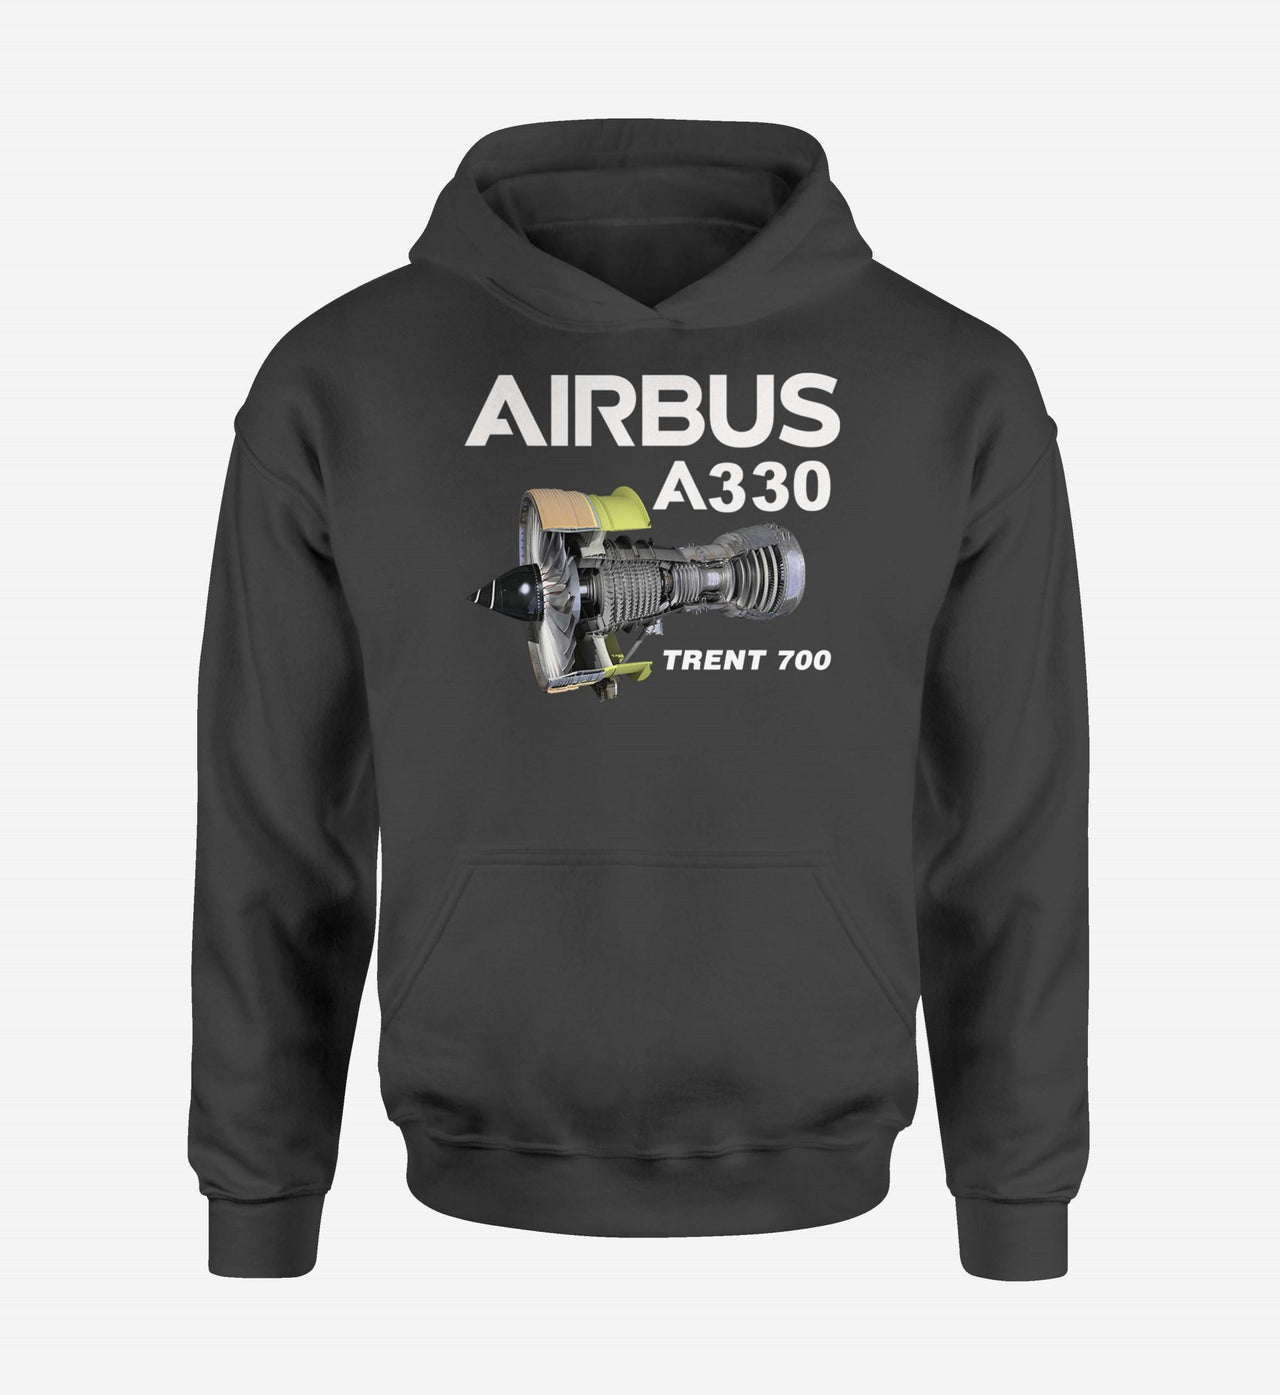 Airbus A330 & Trent 700 Engine Designed Hoodies